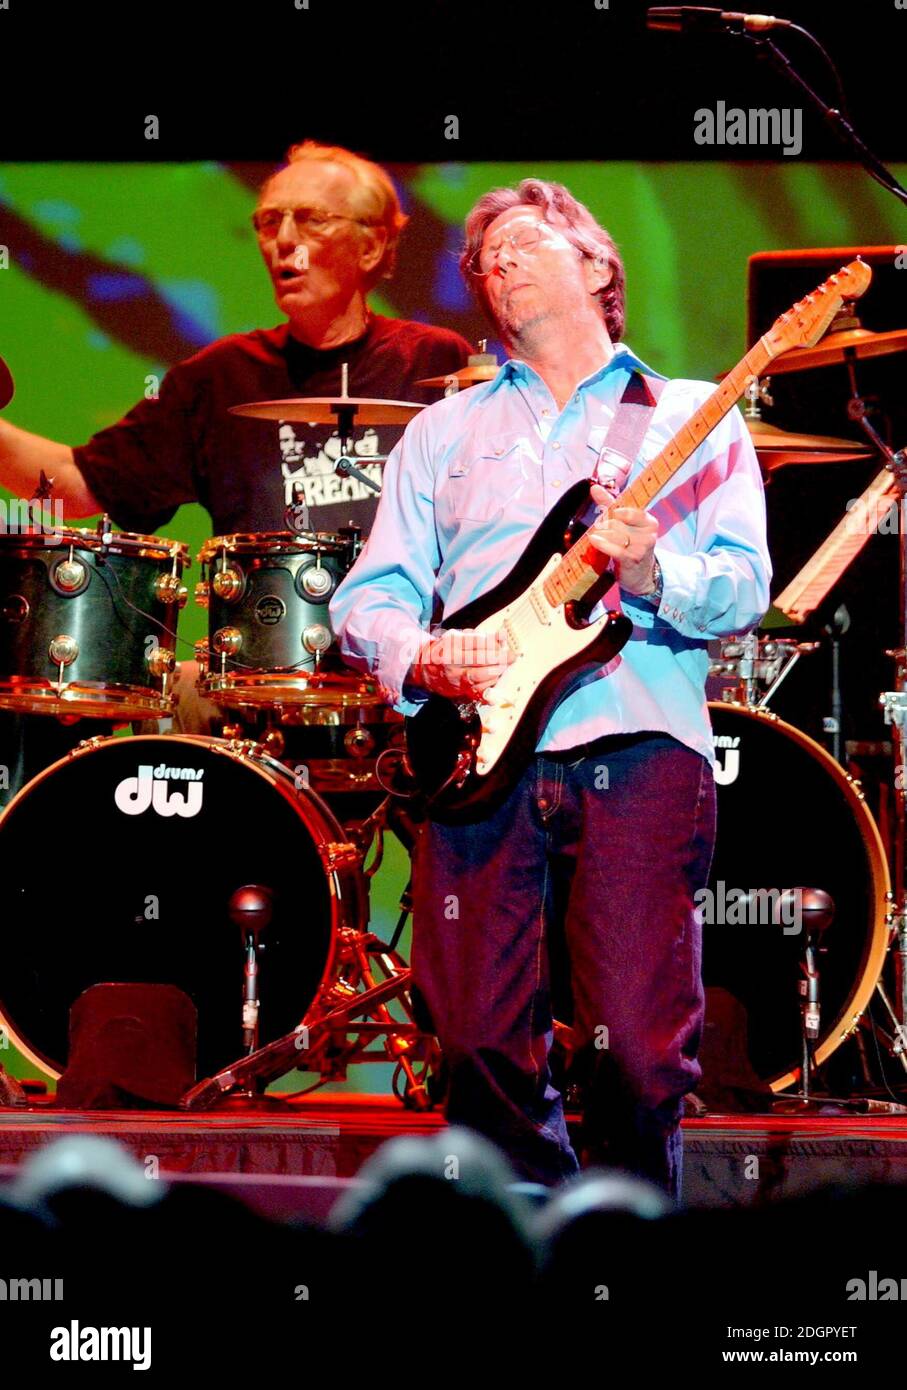 Eric Clapton est rejoint par Ginger Baker et Jack Bruce AS Cream, au Royal Albert Hall de Londres, 36 ans après la séparation du groupe. Les billets étaient en train de changer de mains pour plus de 500 £ sur eBay et jusqu'à 1700 £. Doug Peters/allactiondigital.com Banque D'Images